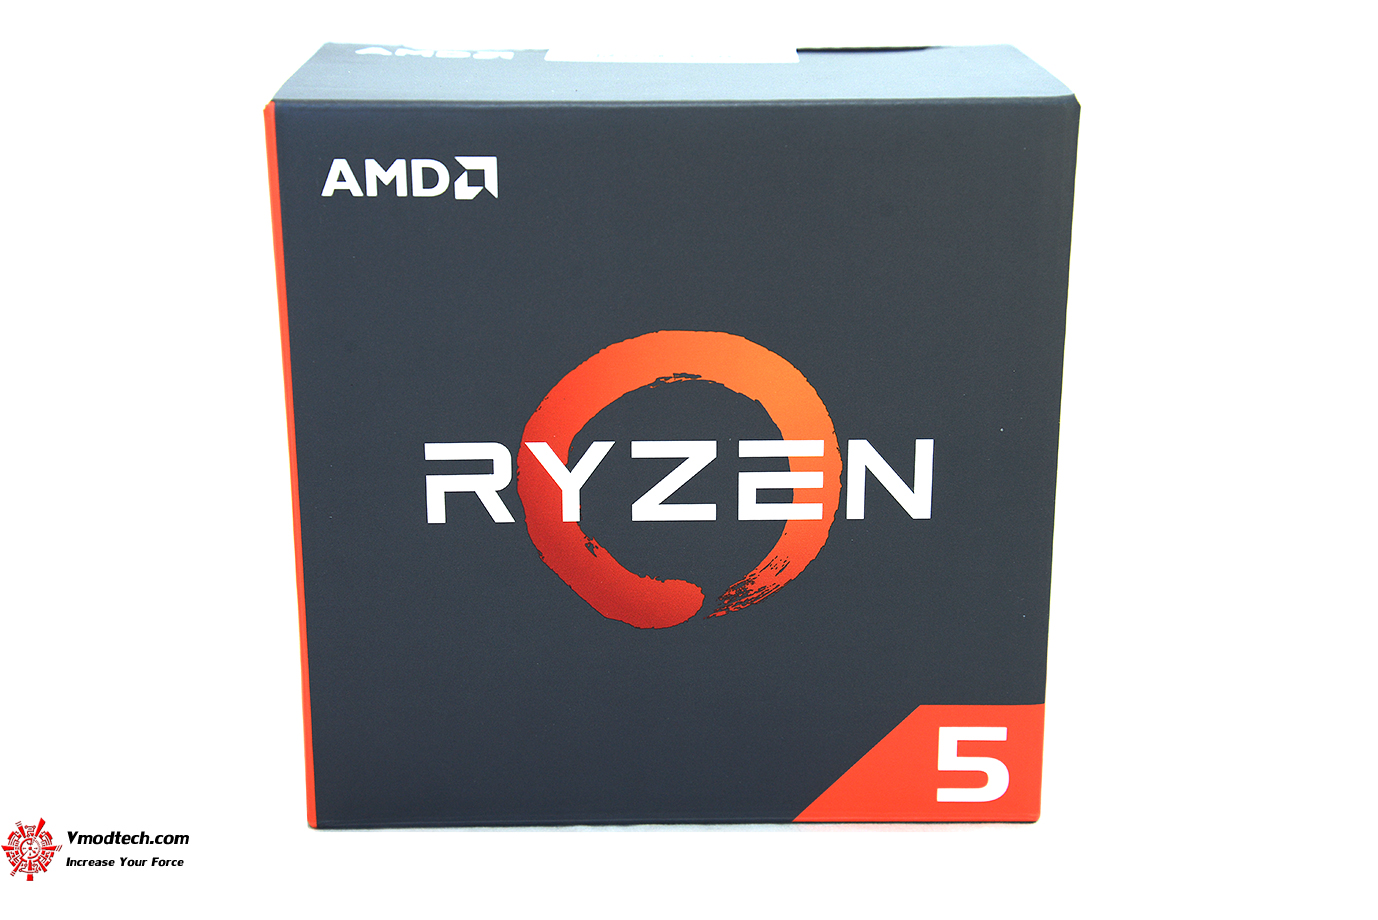 dsc 6638 AMD RYZEN 5 1500X Review